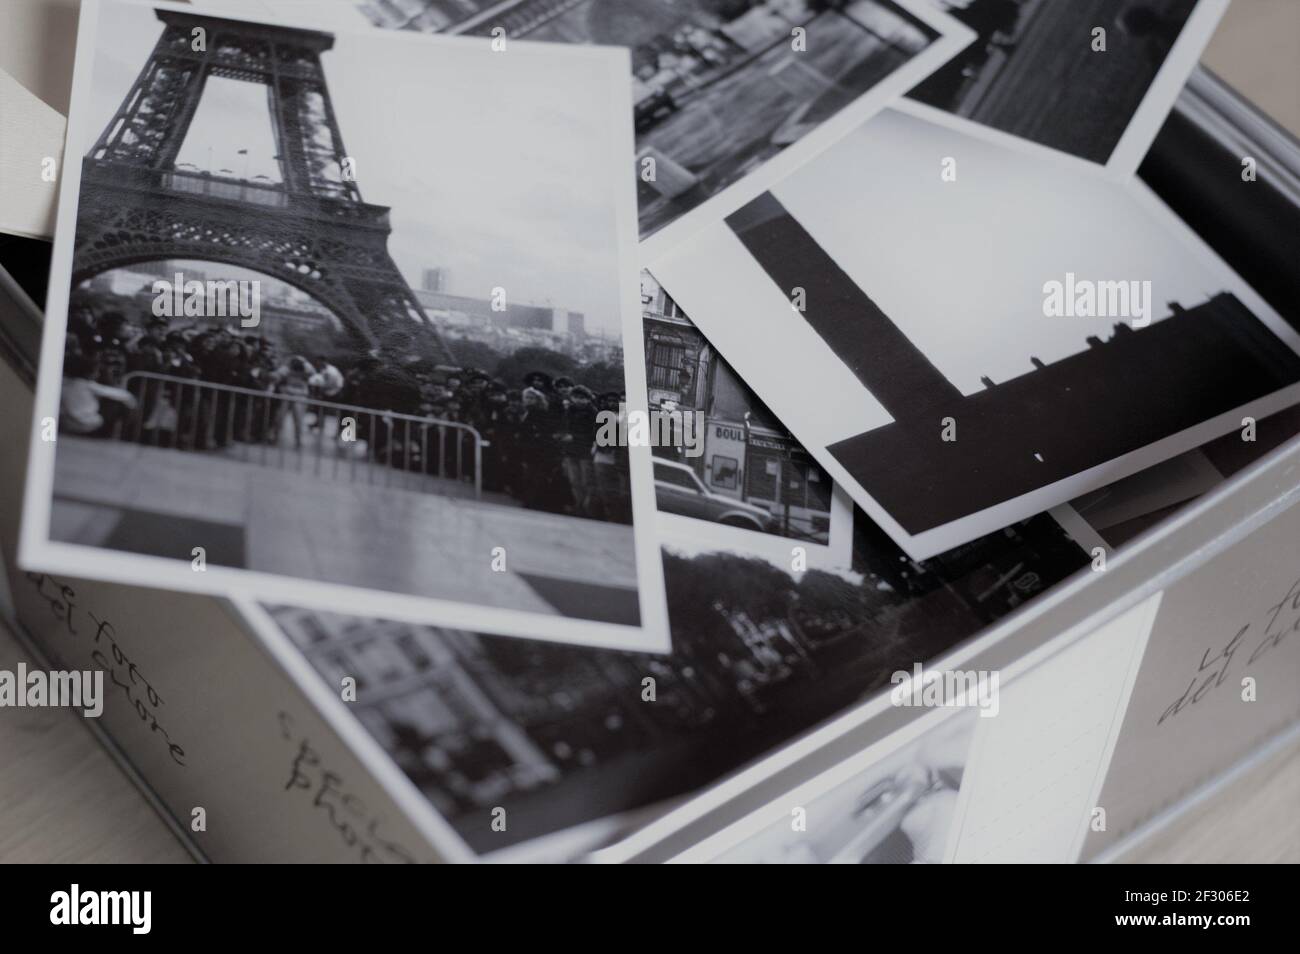 Boîte en métal pleine de photos prises à Paris avec la visite Eiffel en premier plan sur une photo en noir et blanc Banque D'Images